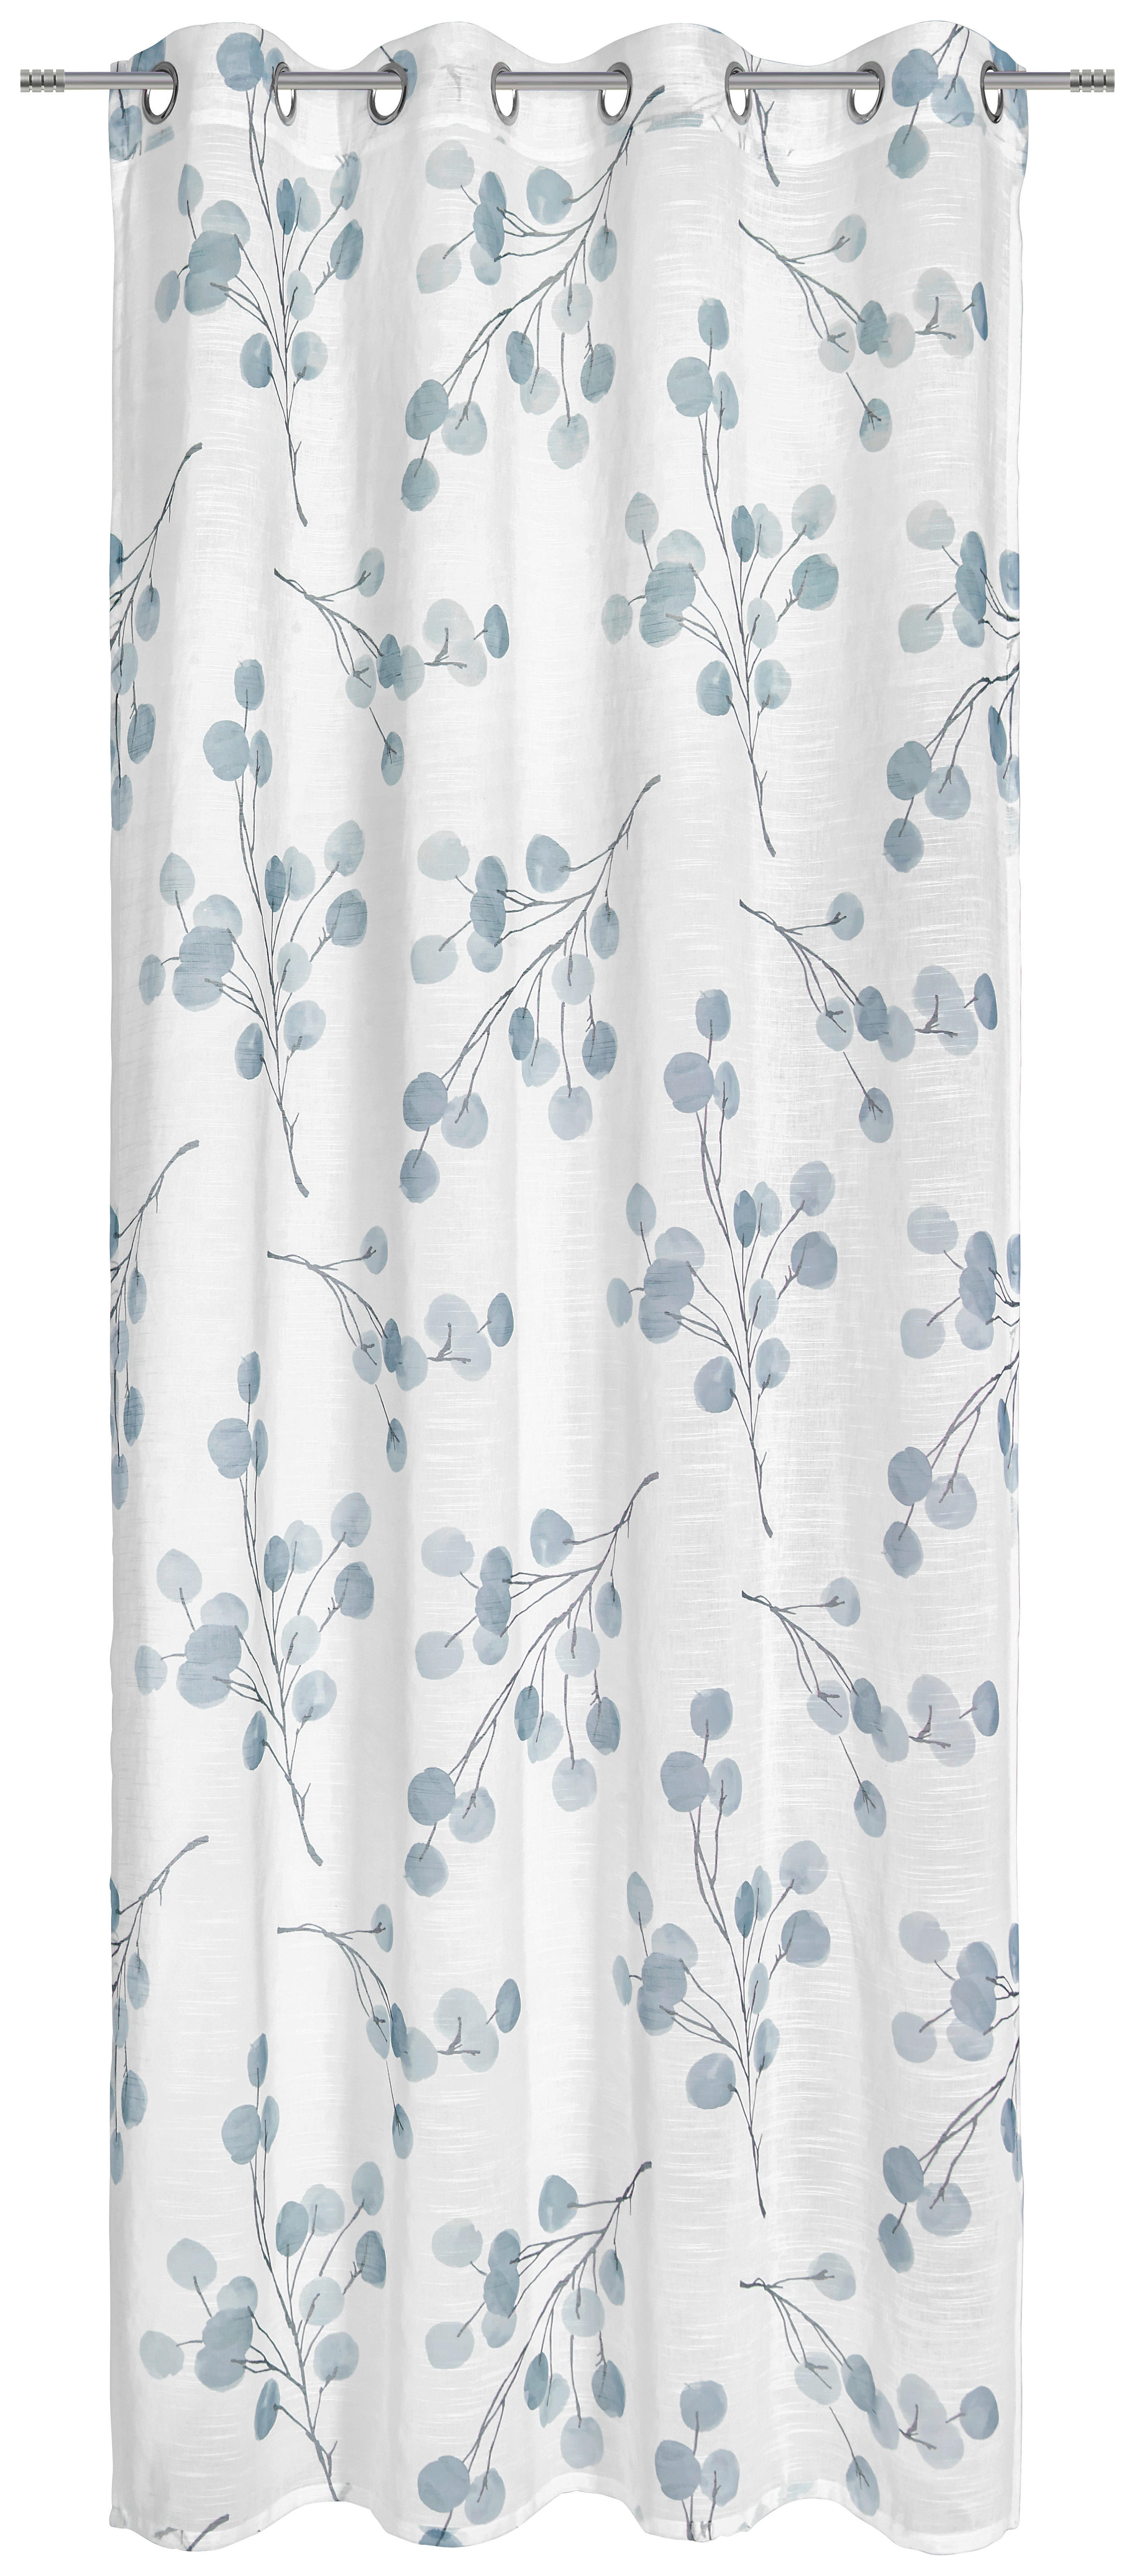 RINGLIS FÜGGÖNY Részben áttetsző  - Kék, Konventionell, Textil (135/245cm) - Esposa